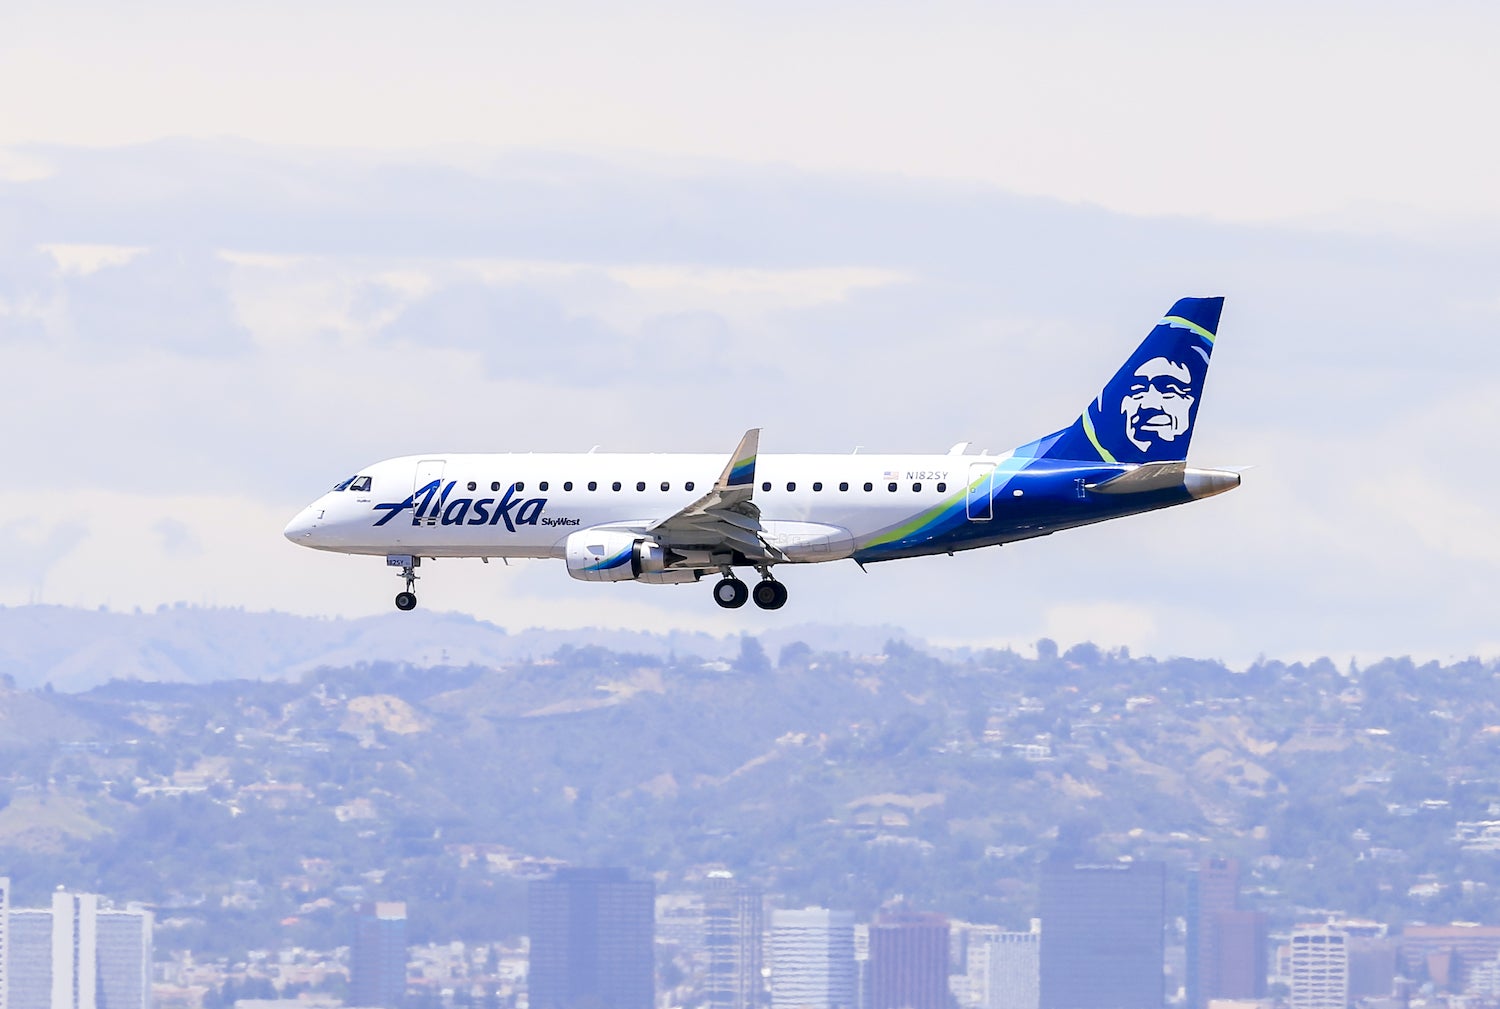 Big 70,000-mile bonus: A review of the Alaska Airlines Visa credit card